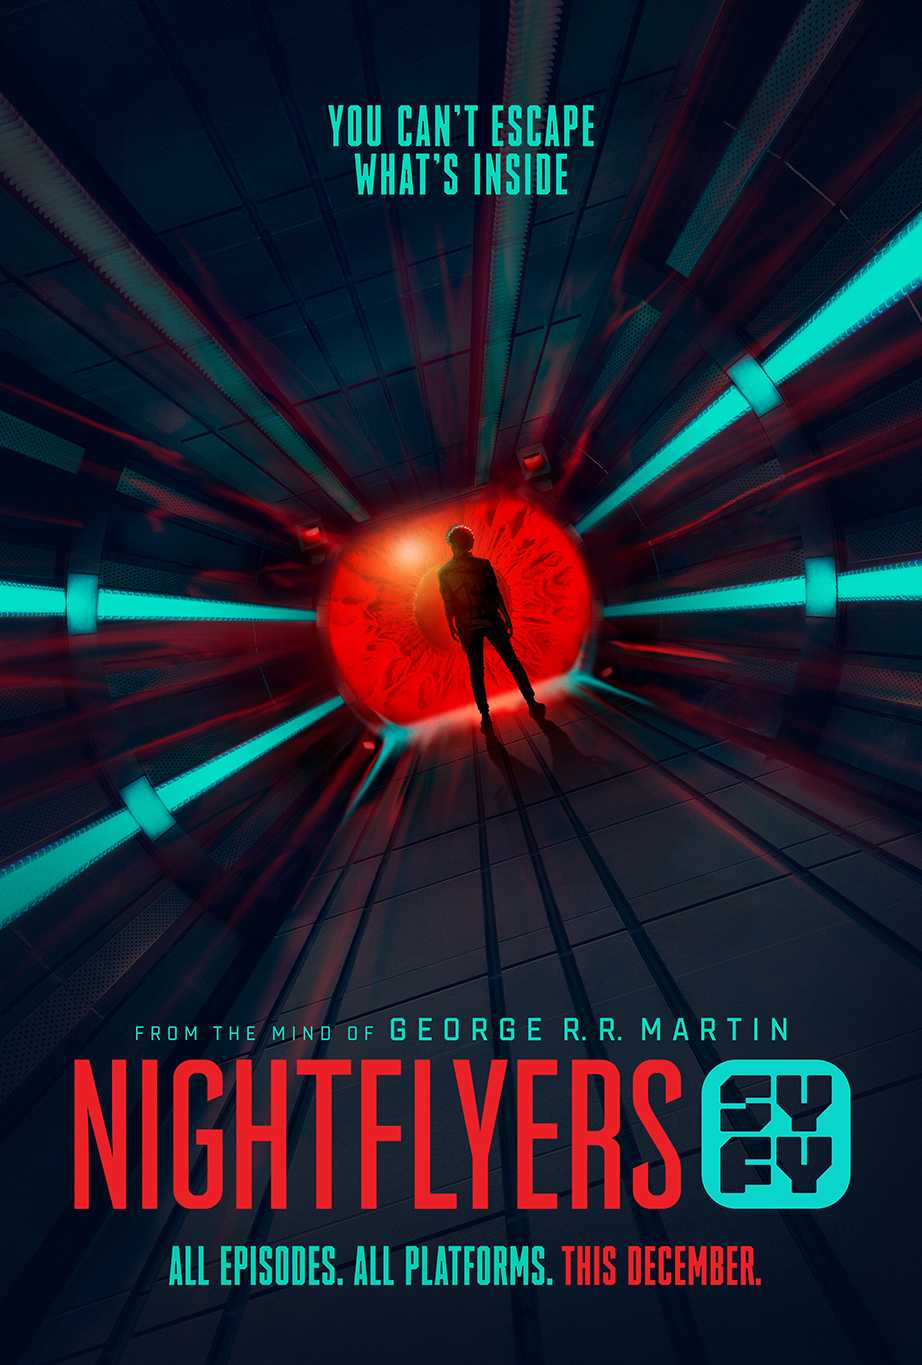 Con tàu nightflyer - Nightflyers